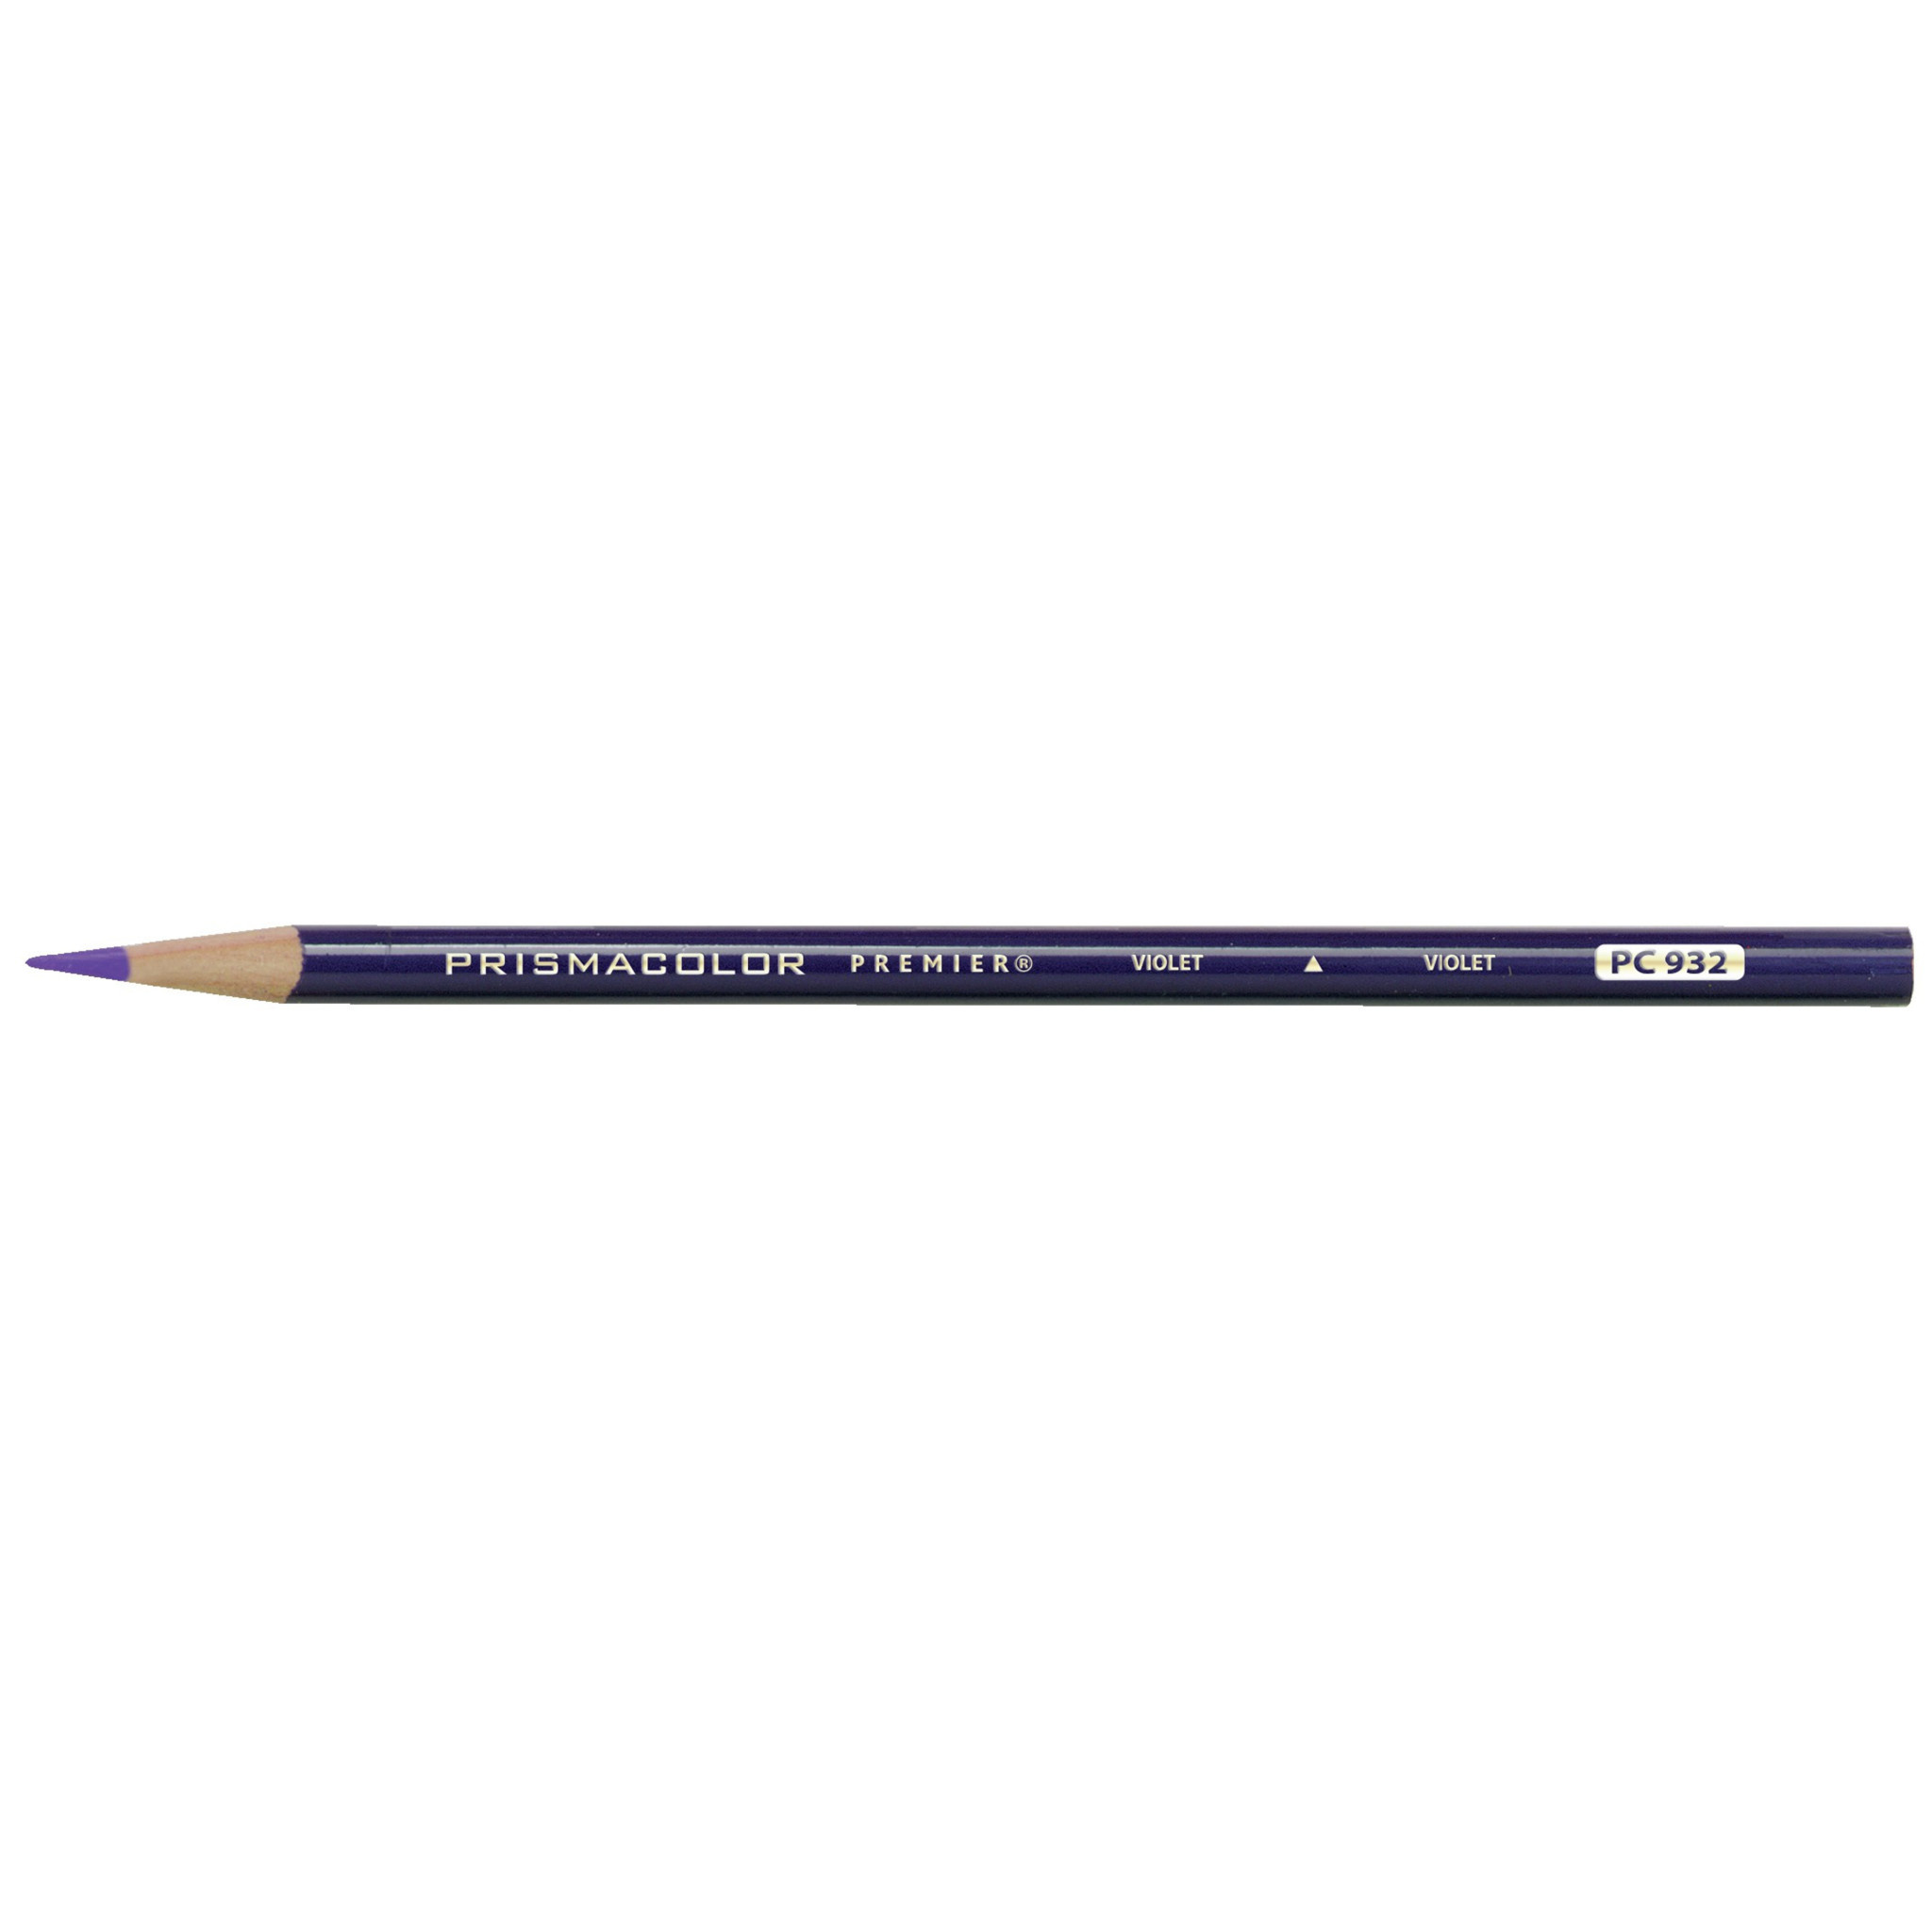 Prismacolor Premier Thick Core Colored Pencil 48 Set